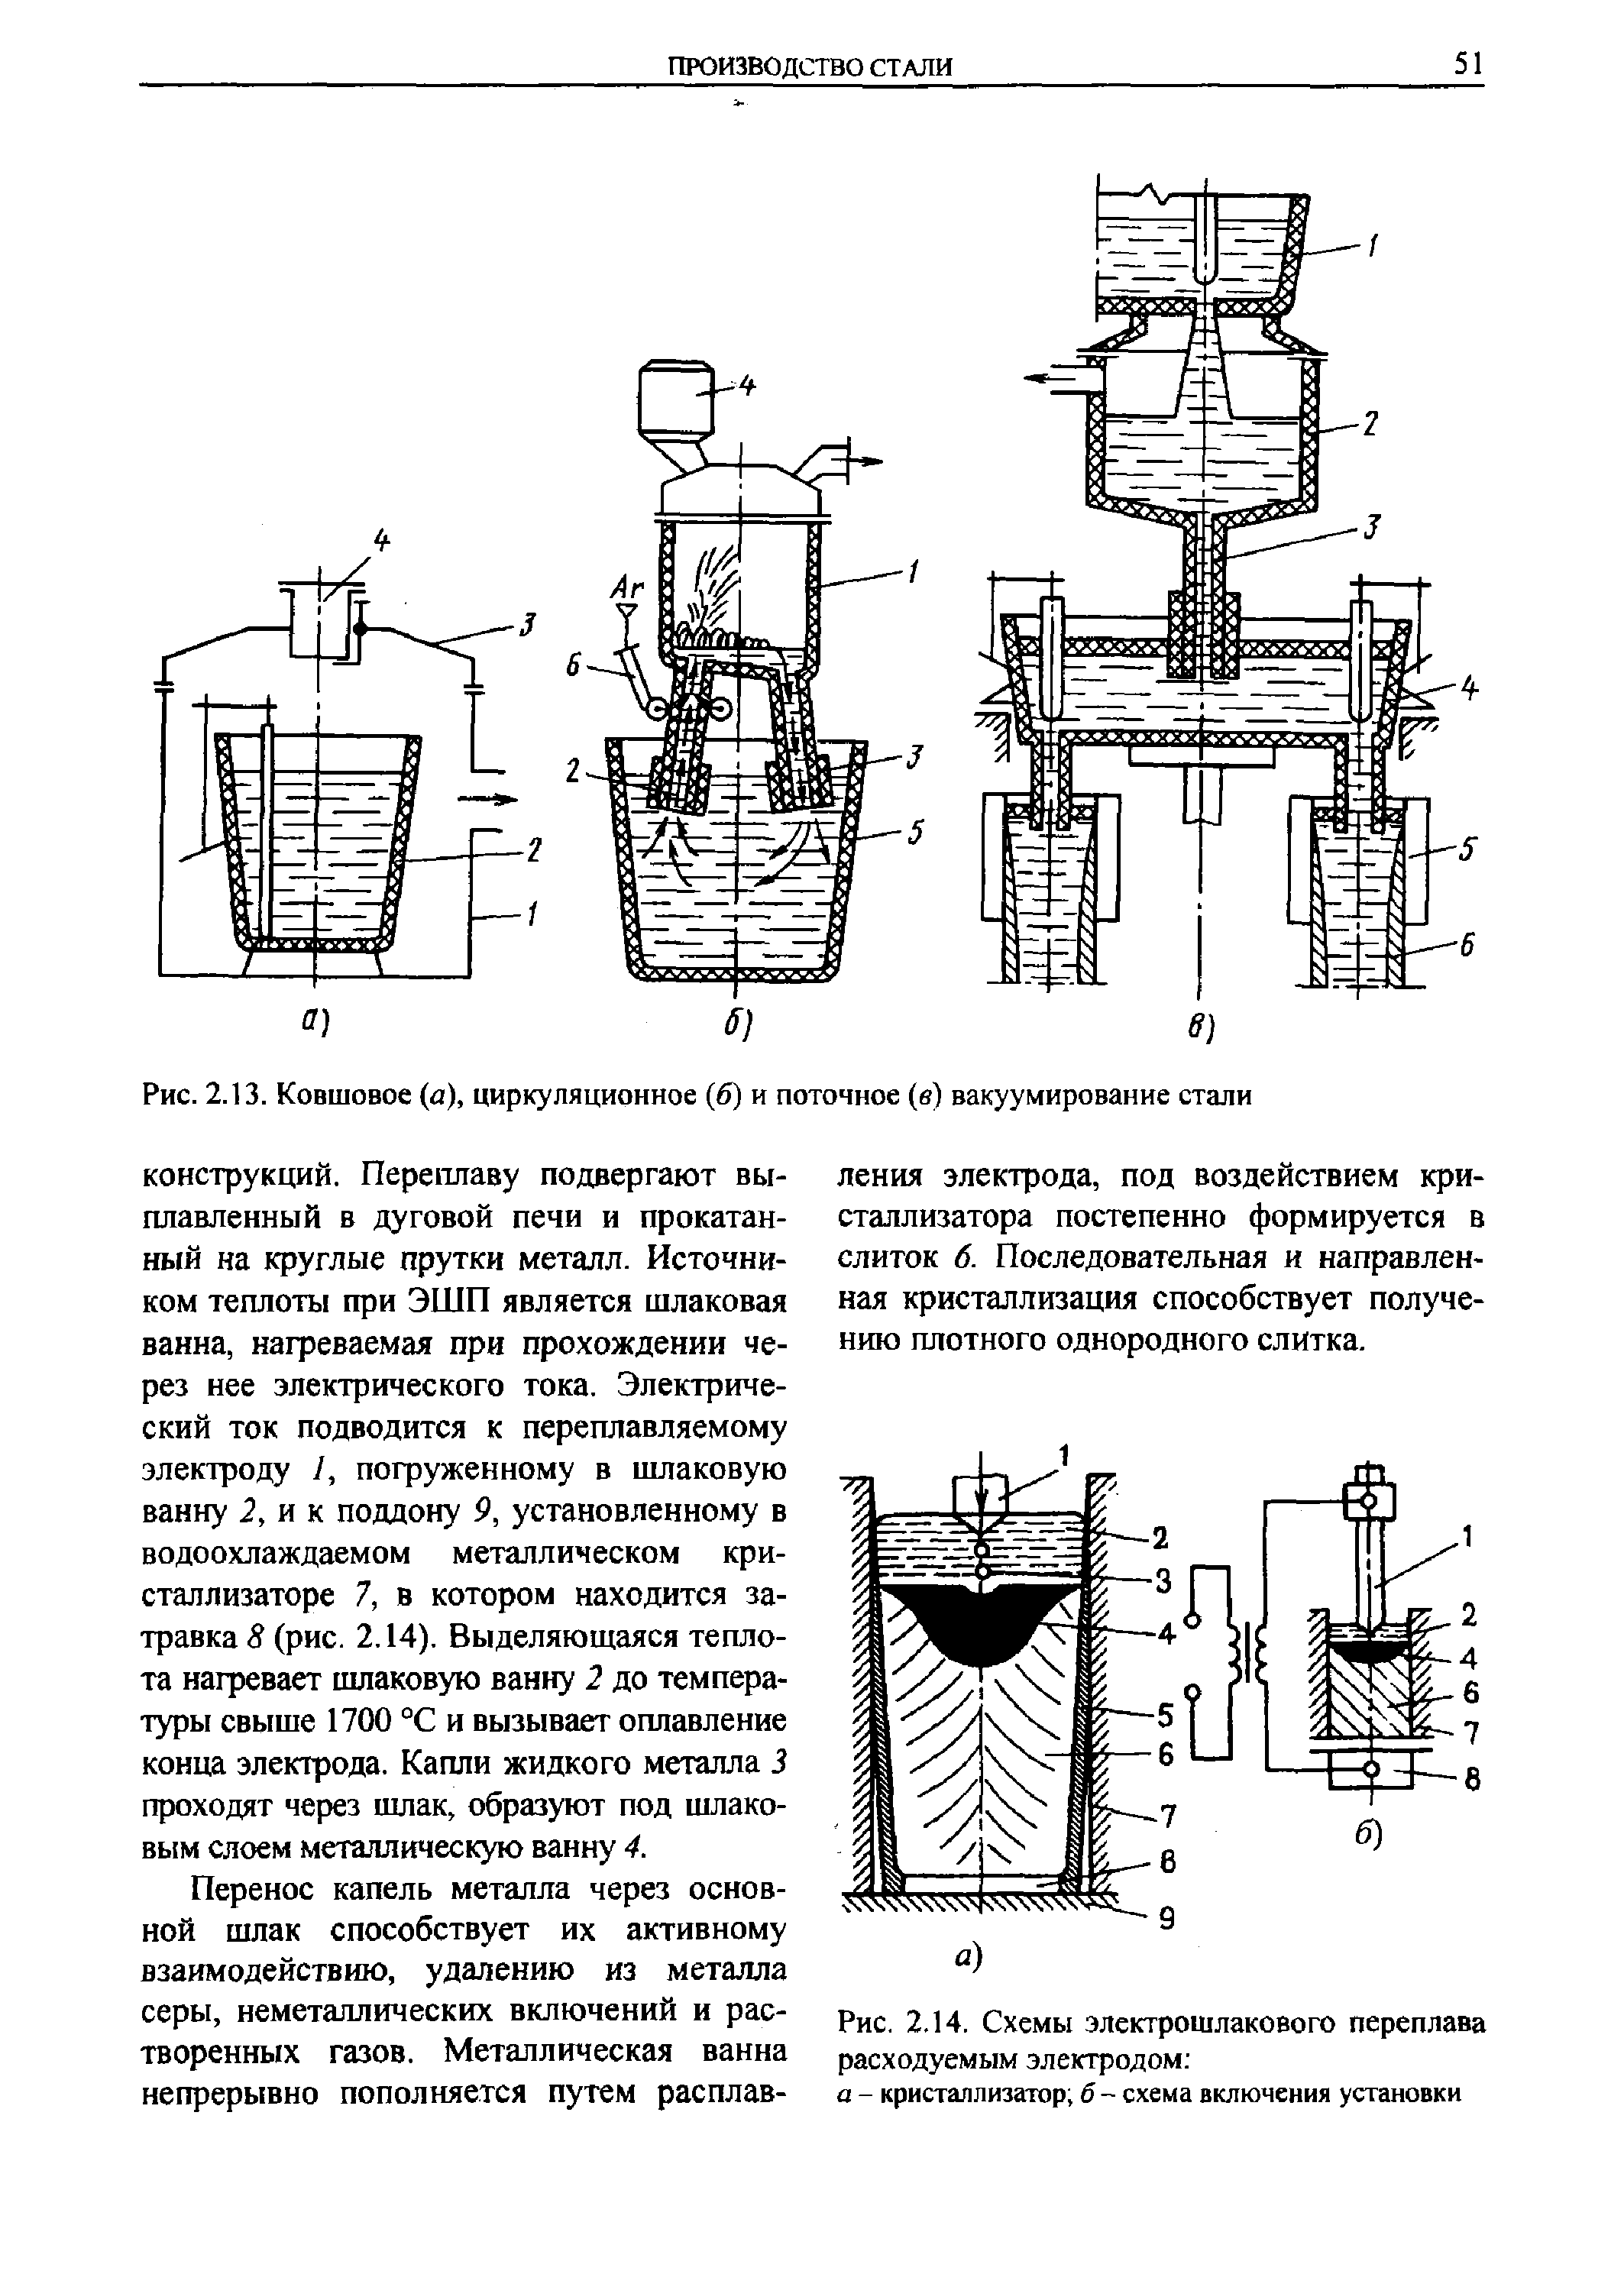 Рис. 2.13. Ковшовое (а), циркуляционное (б) и поточное (в) вакуумирование стали
